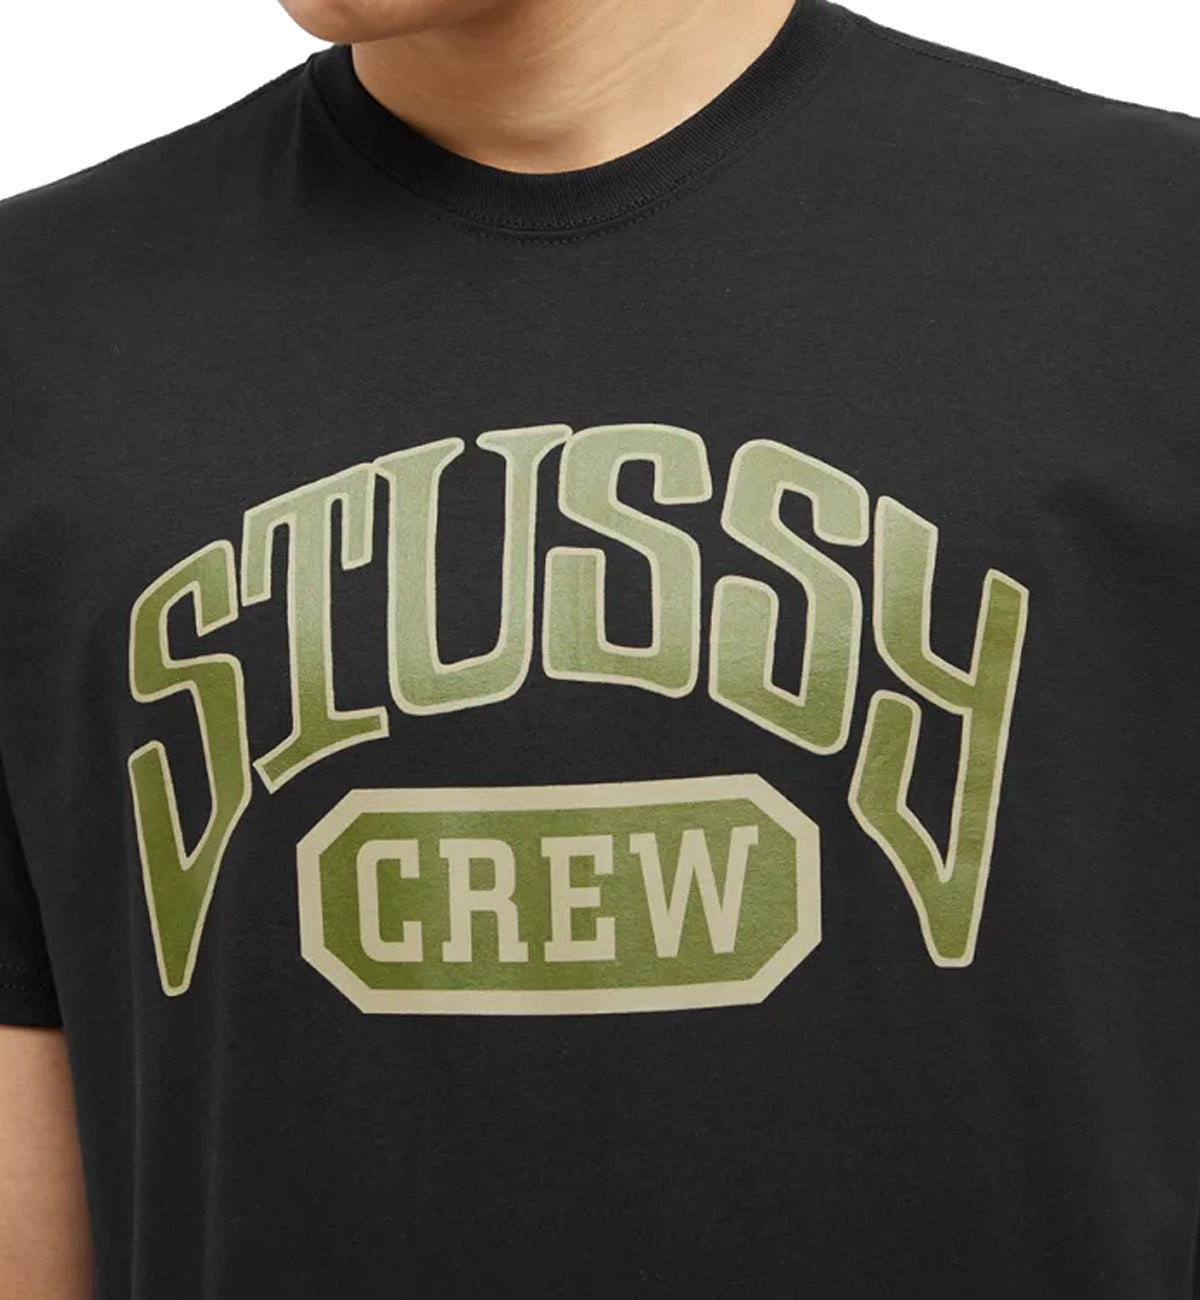 Stussy Crew Tee - Black